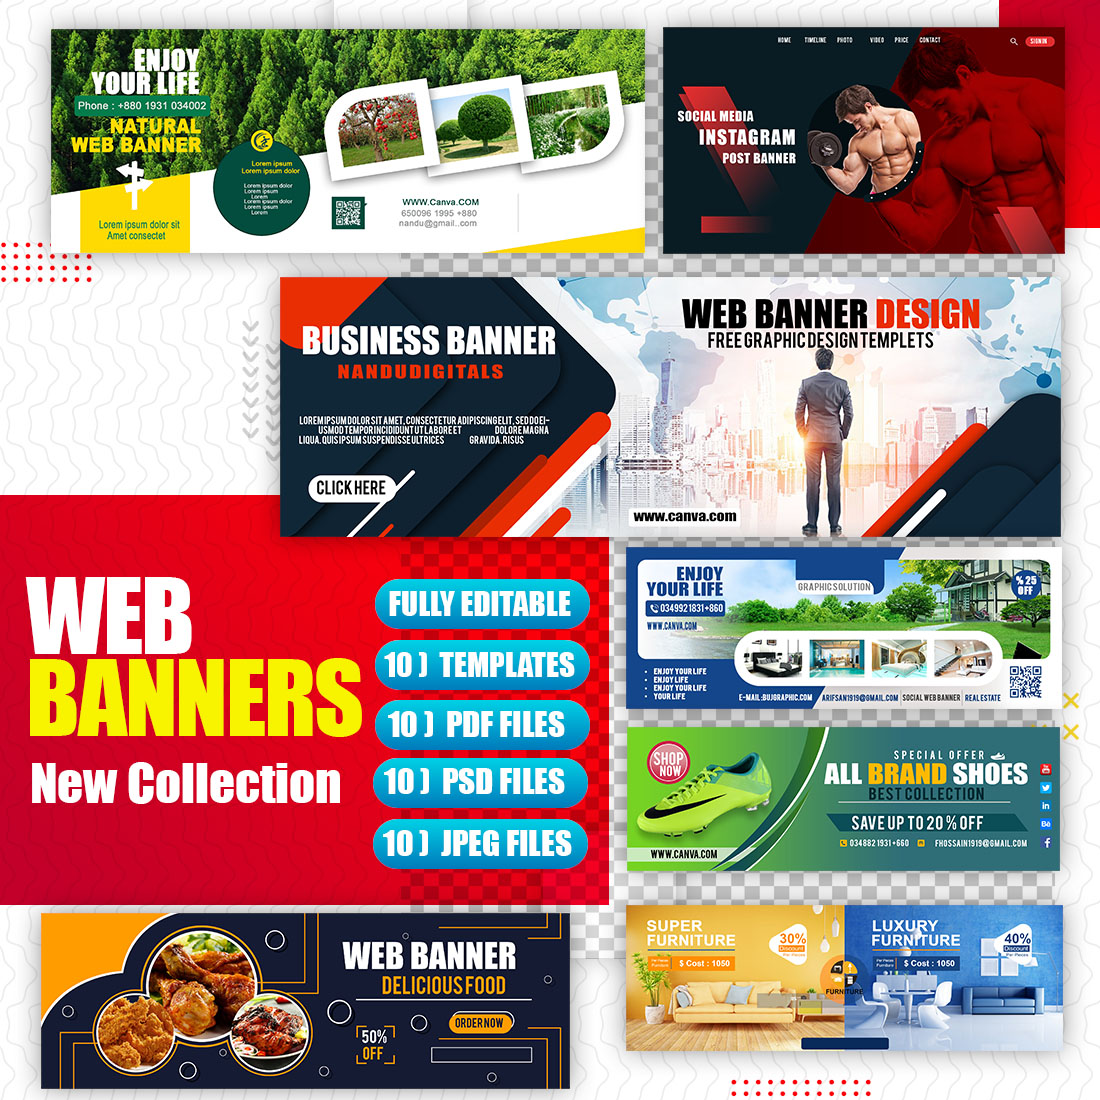 Multi Purpose Brand Web Banner preview image.